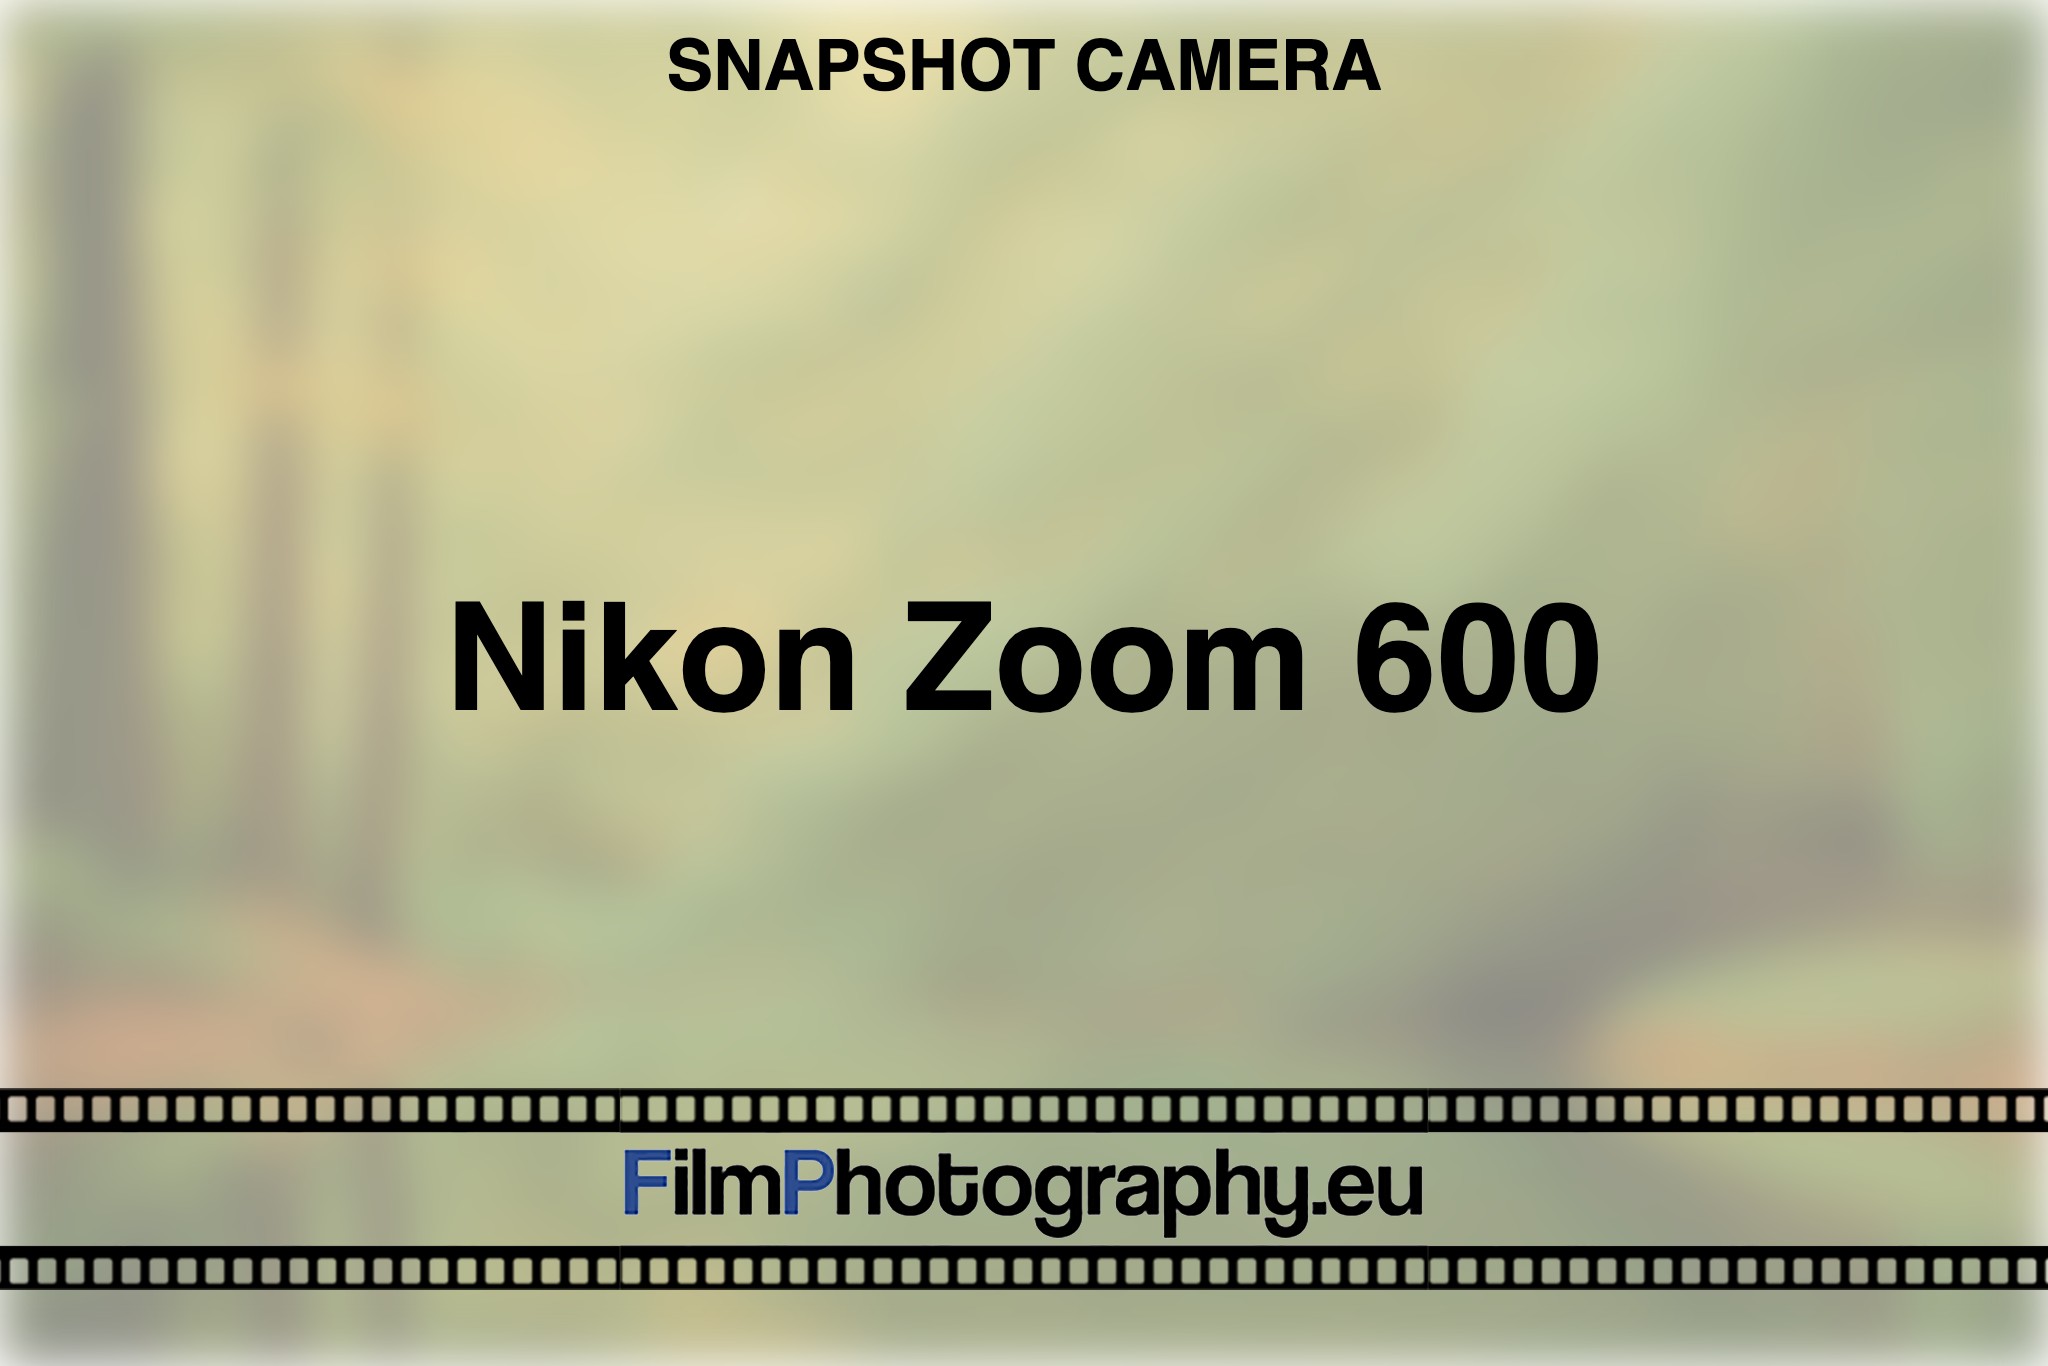 nikon-zoom-600-snapshot-camera-bnv